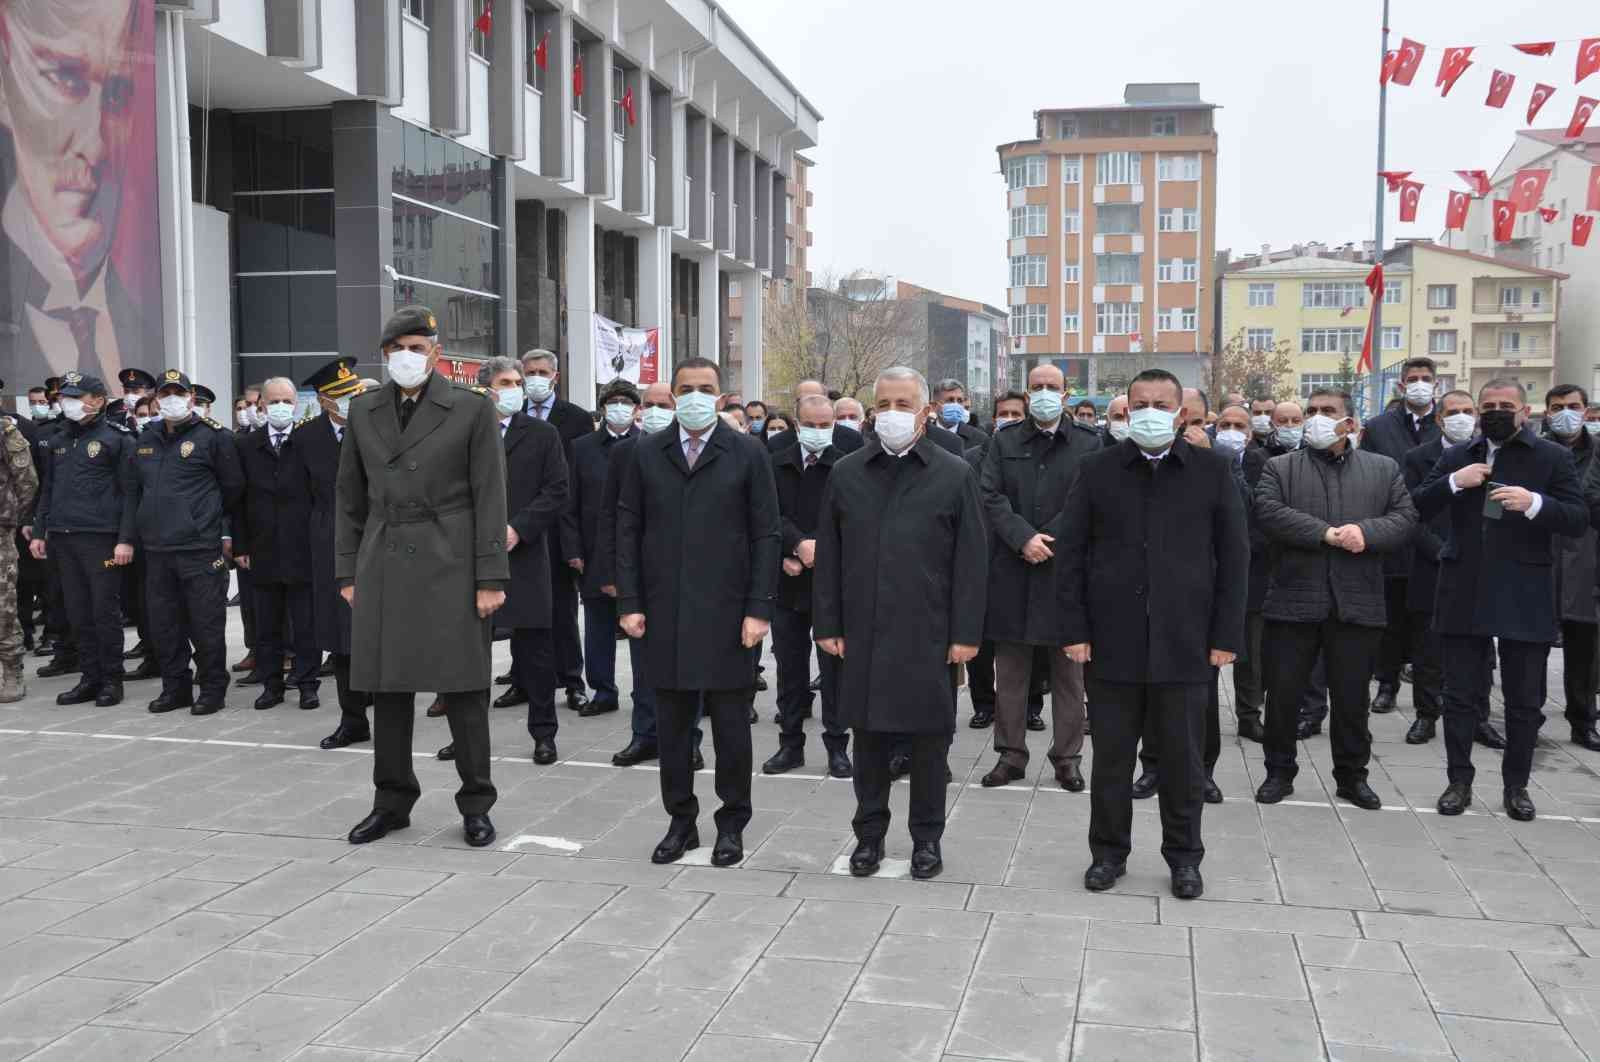 Kars Valisi Belediye Başkan Vekili Türker Öksüz: Bu topraklar can verilerek vatan yapılmıştır #kars